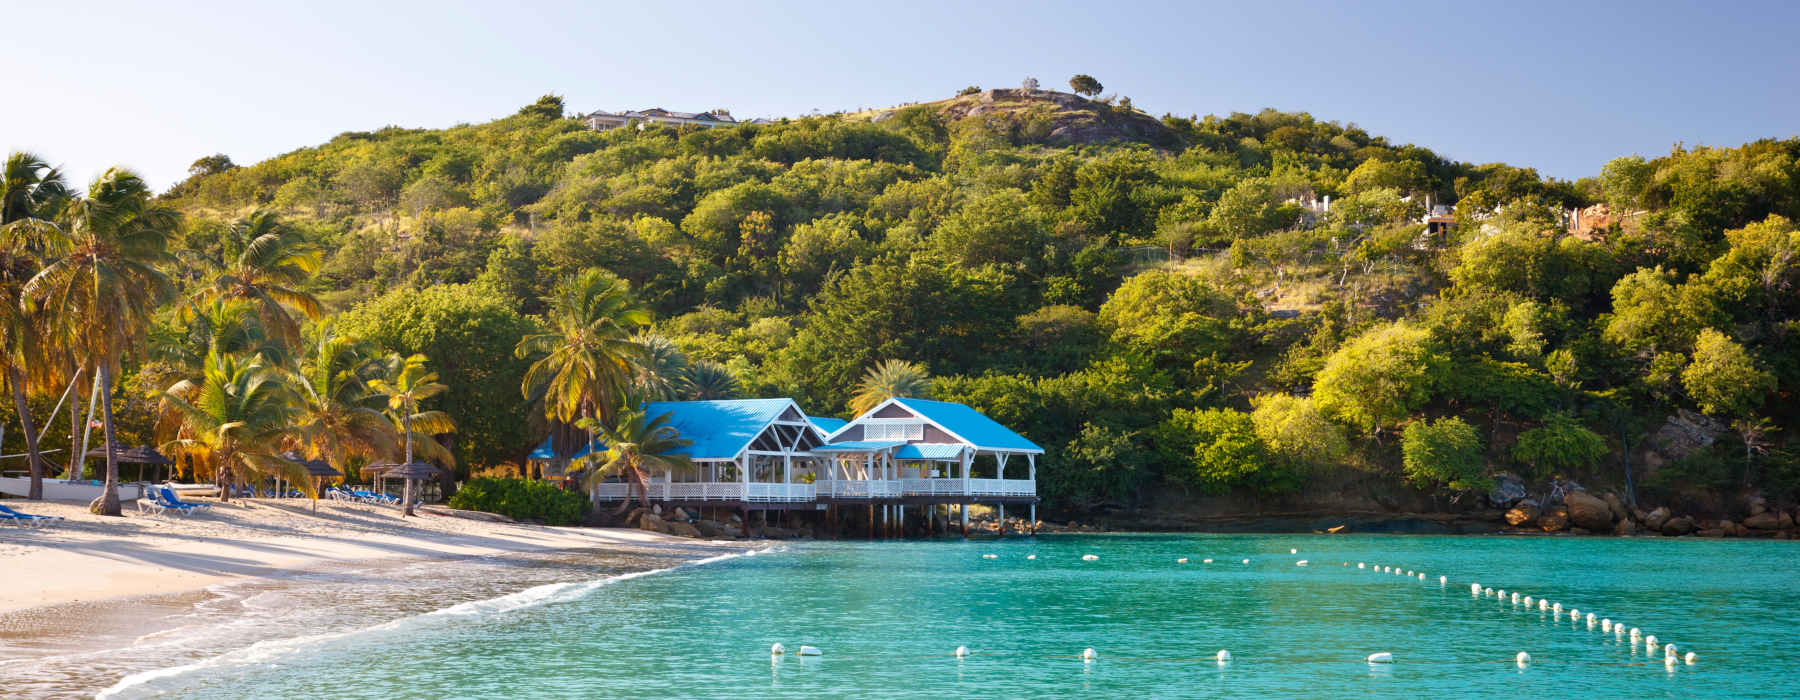  Antigua and Barbuda holidays